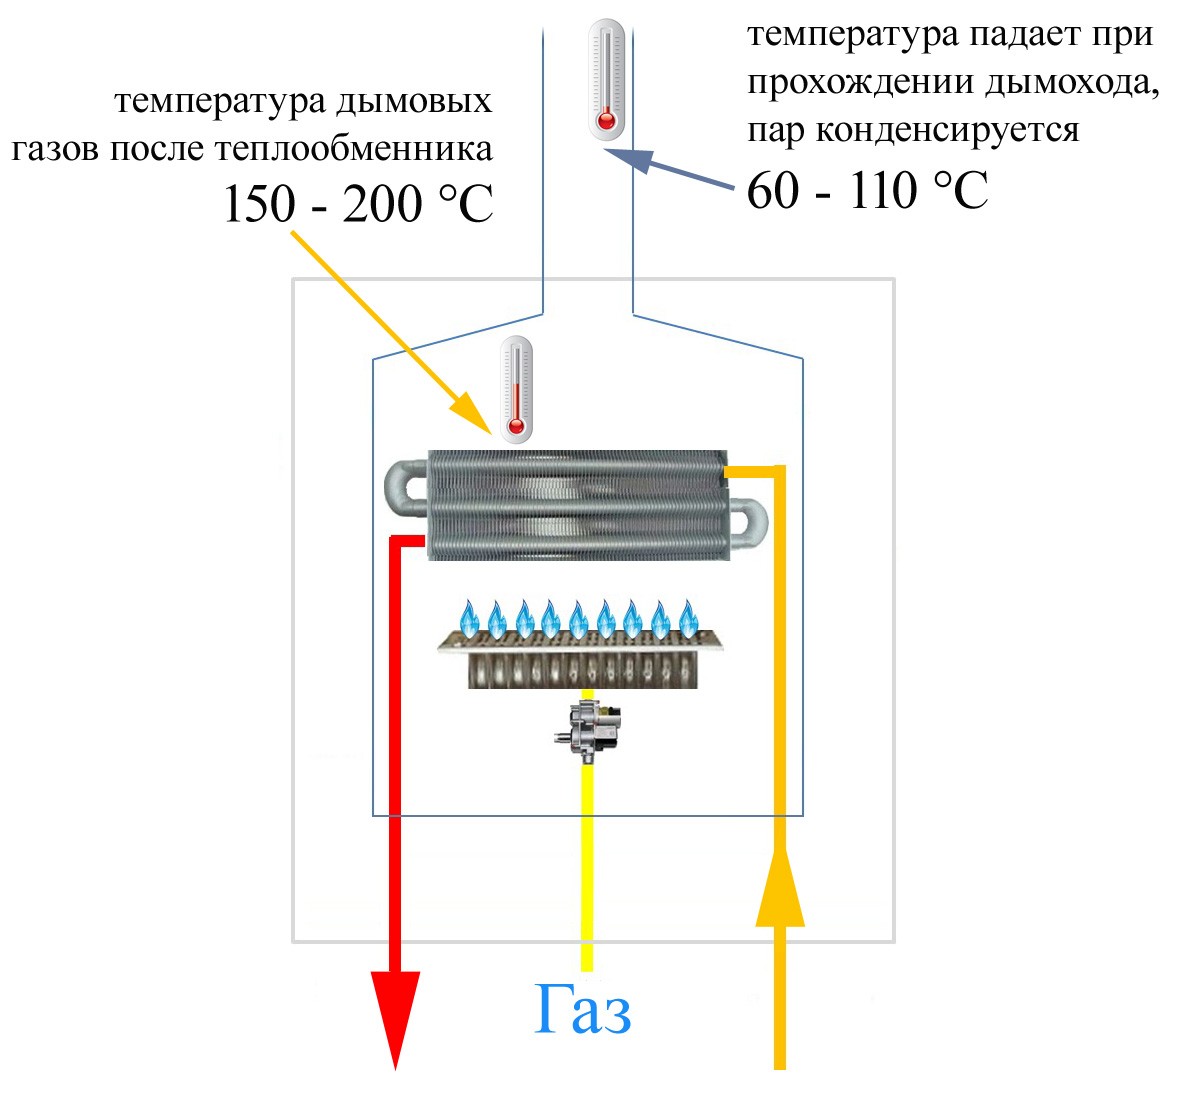 Схема котла и температура дымовых газов